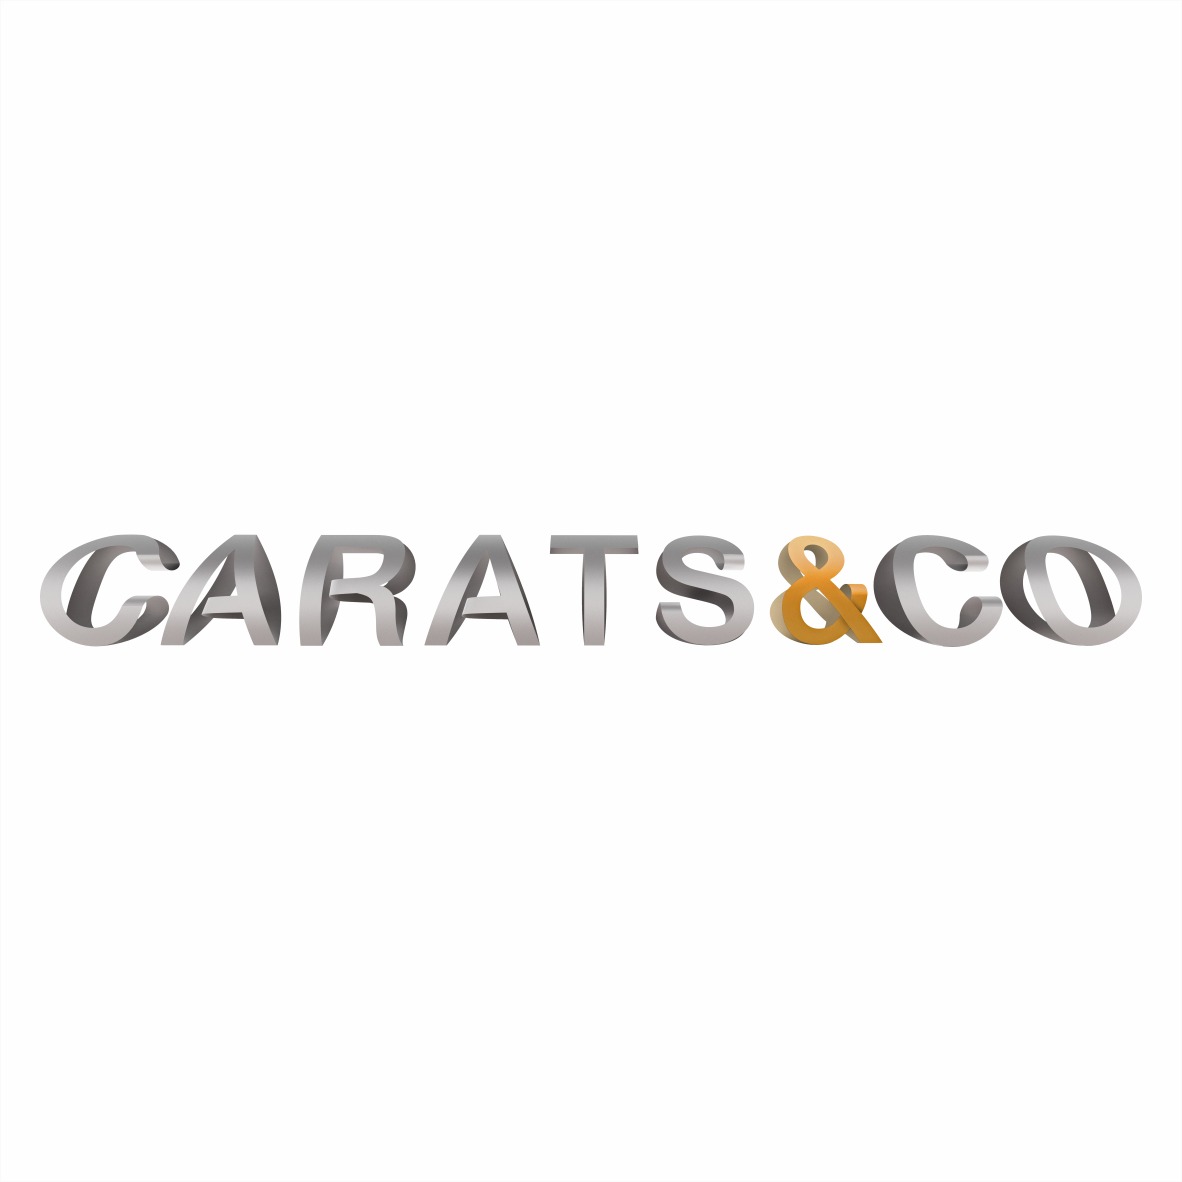 Carats&co Pte. Ltd. company logo